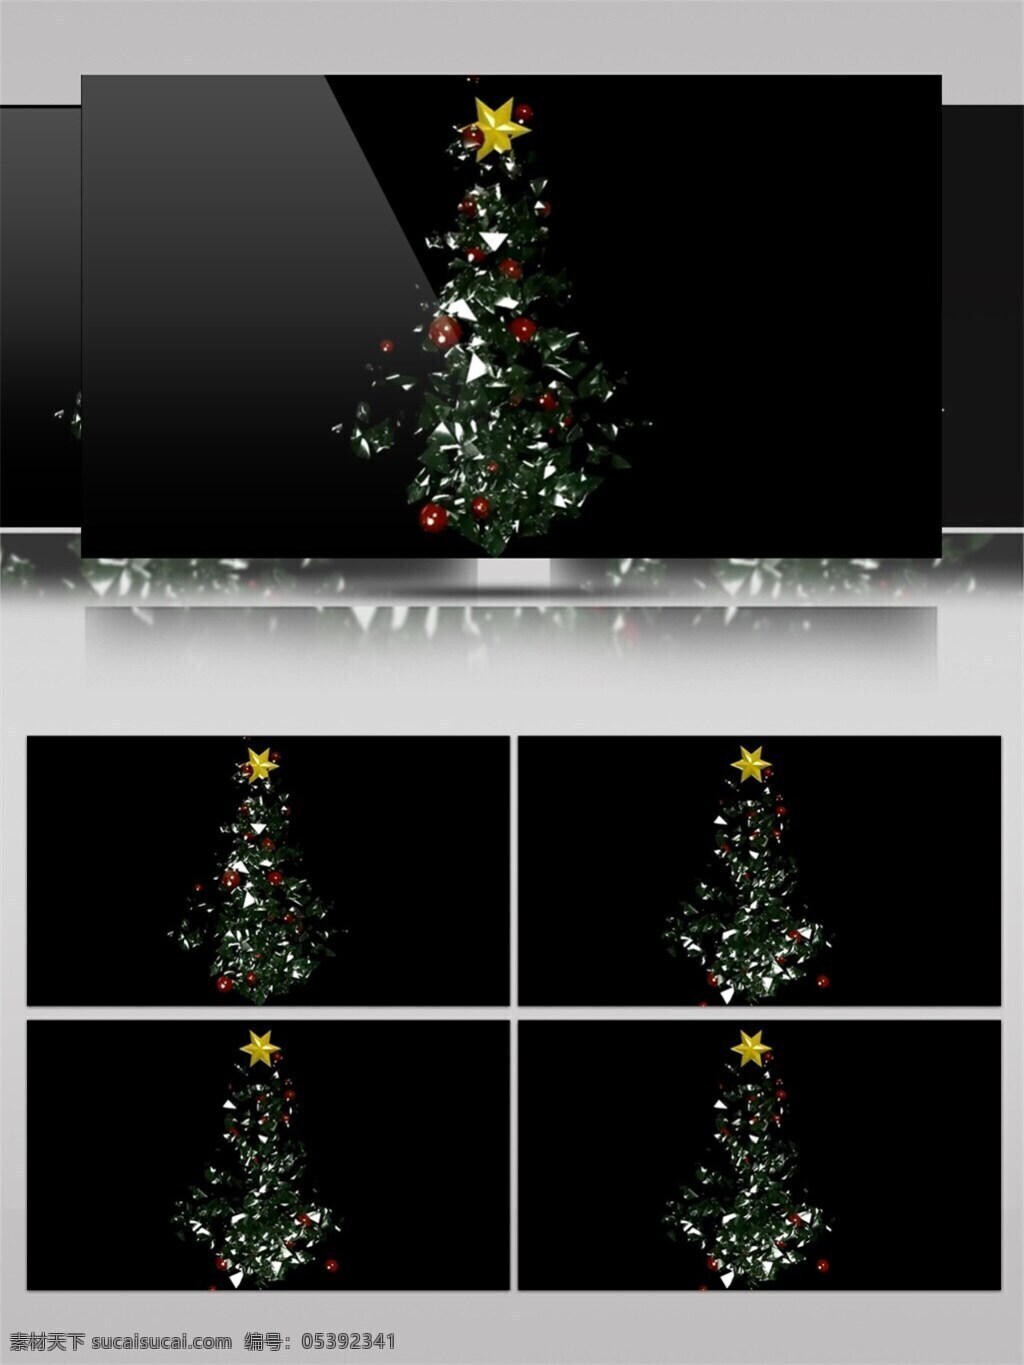 星星 圣诞树 圣诞节 视频 高质量 背景 美景动态背景 圣诞节礼物 炫酷装饰